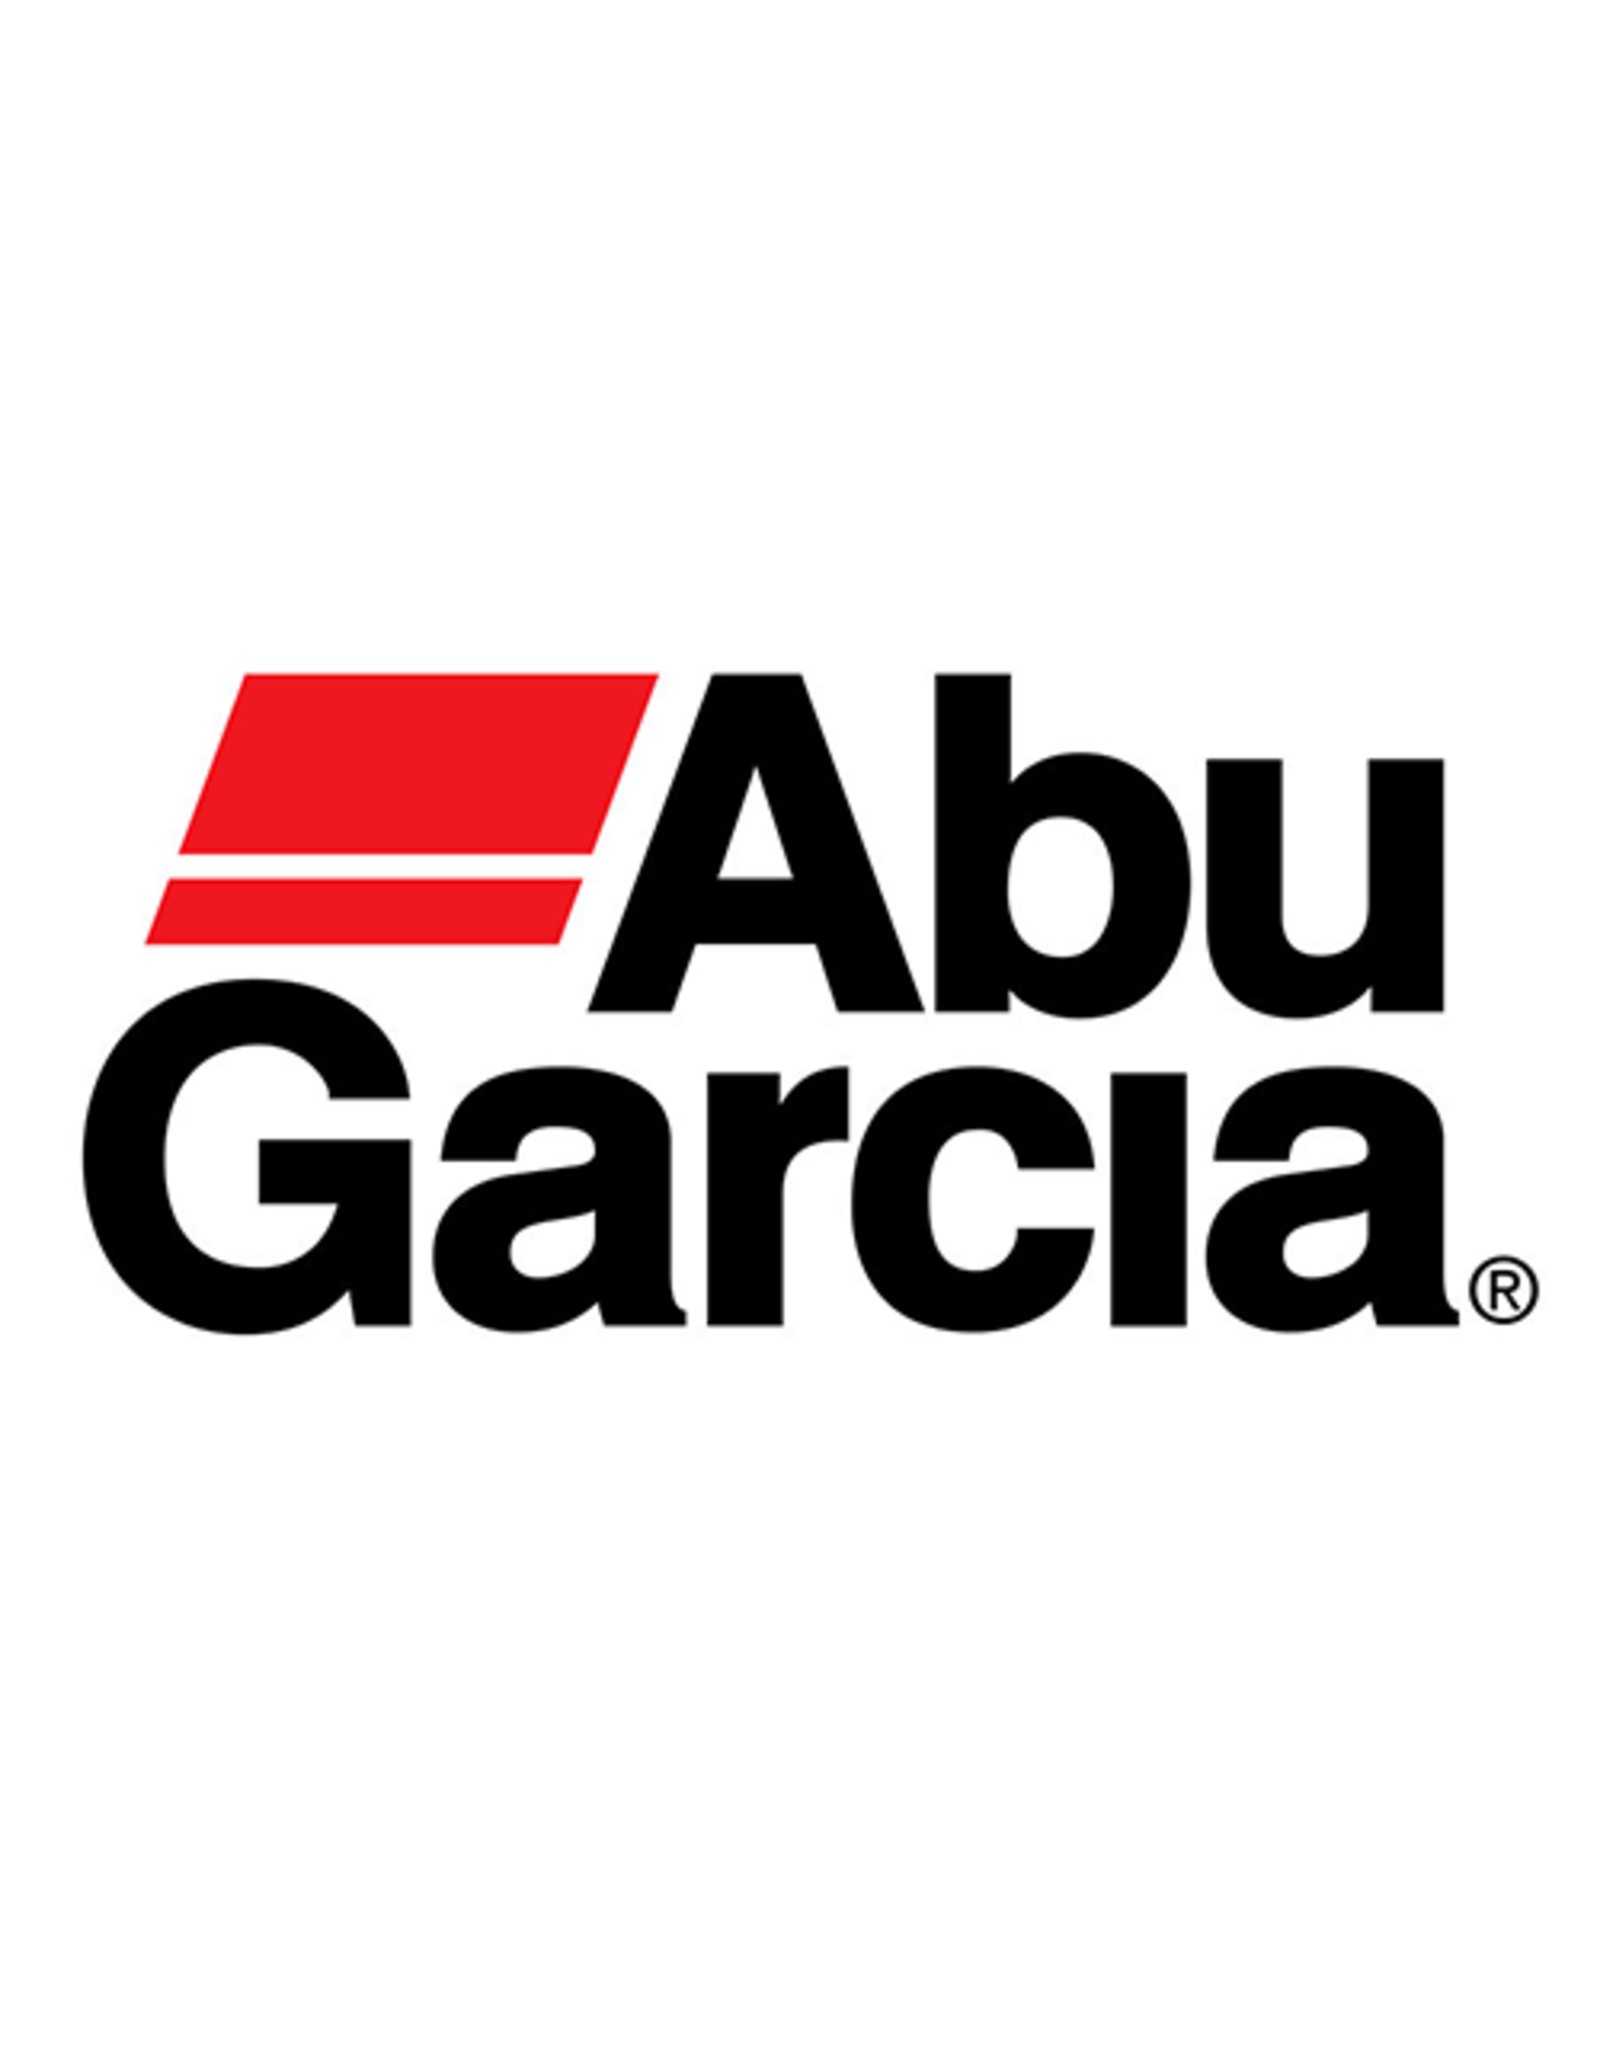 Abu Garcia 1134539  HANDLE ASSY